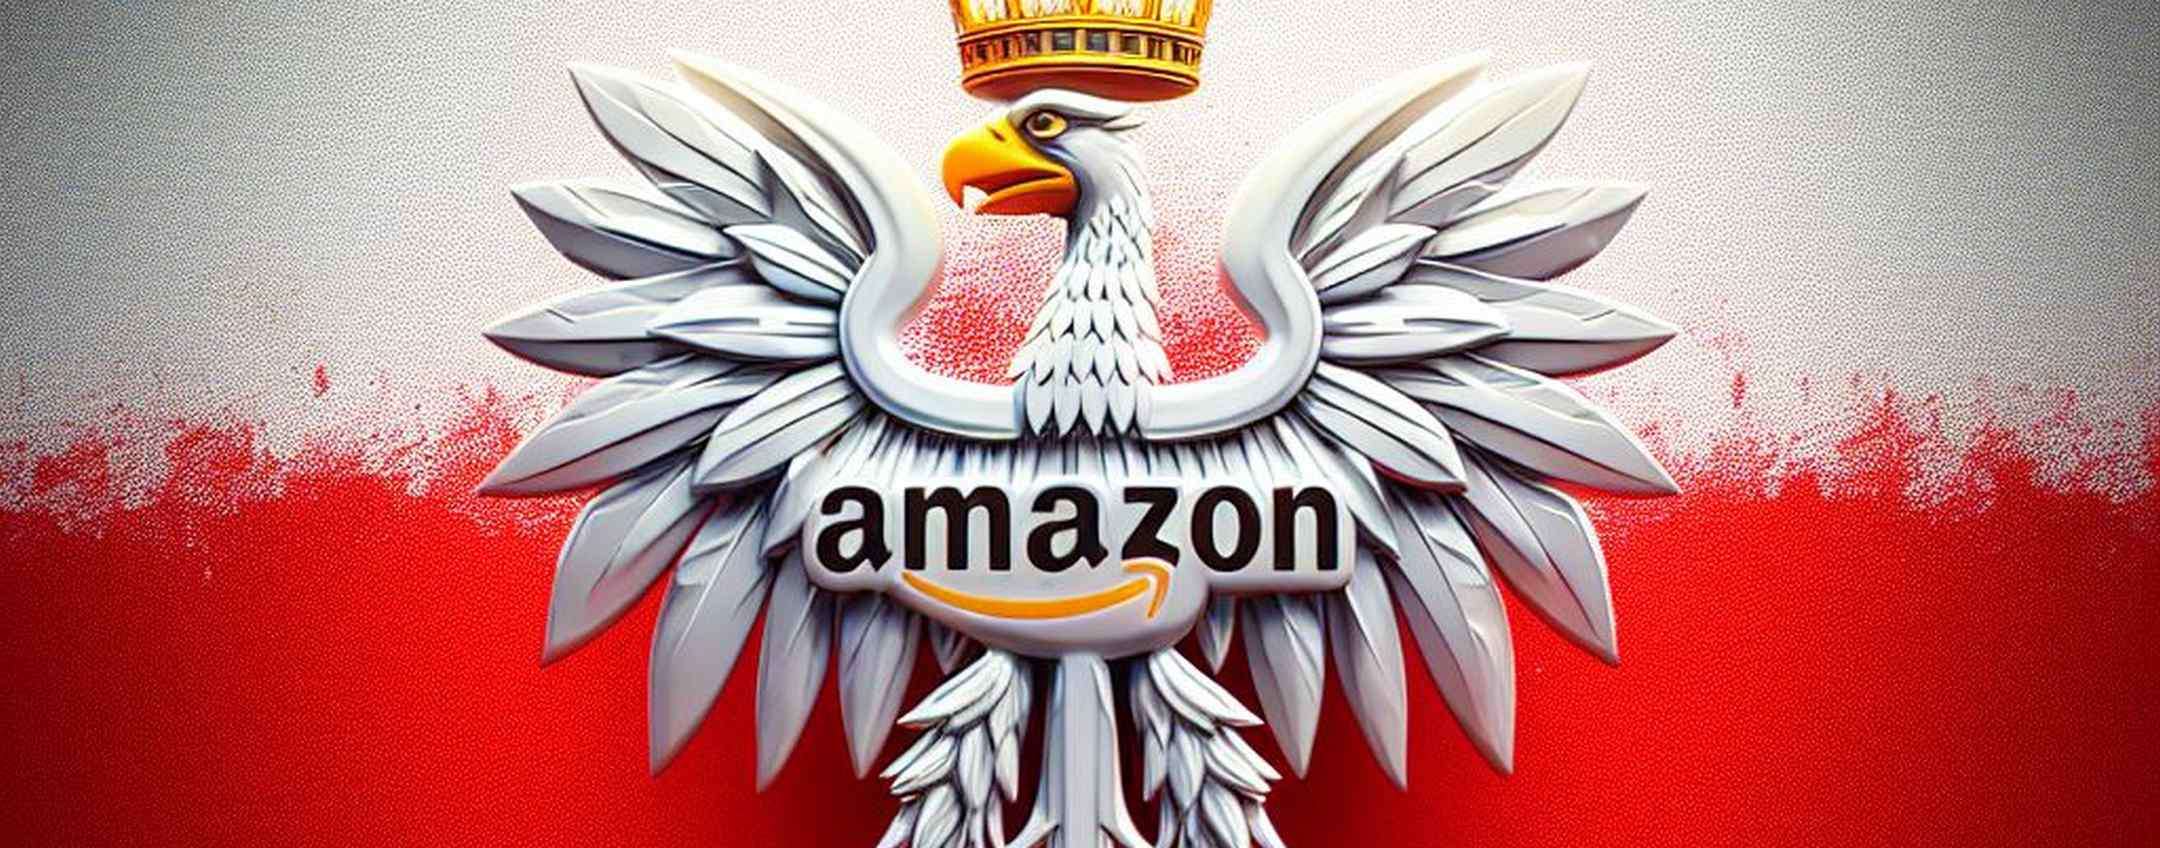 Amazon Polonia